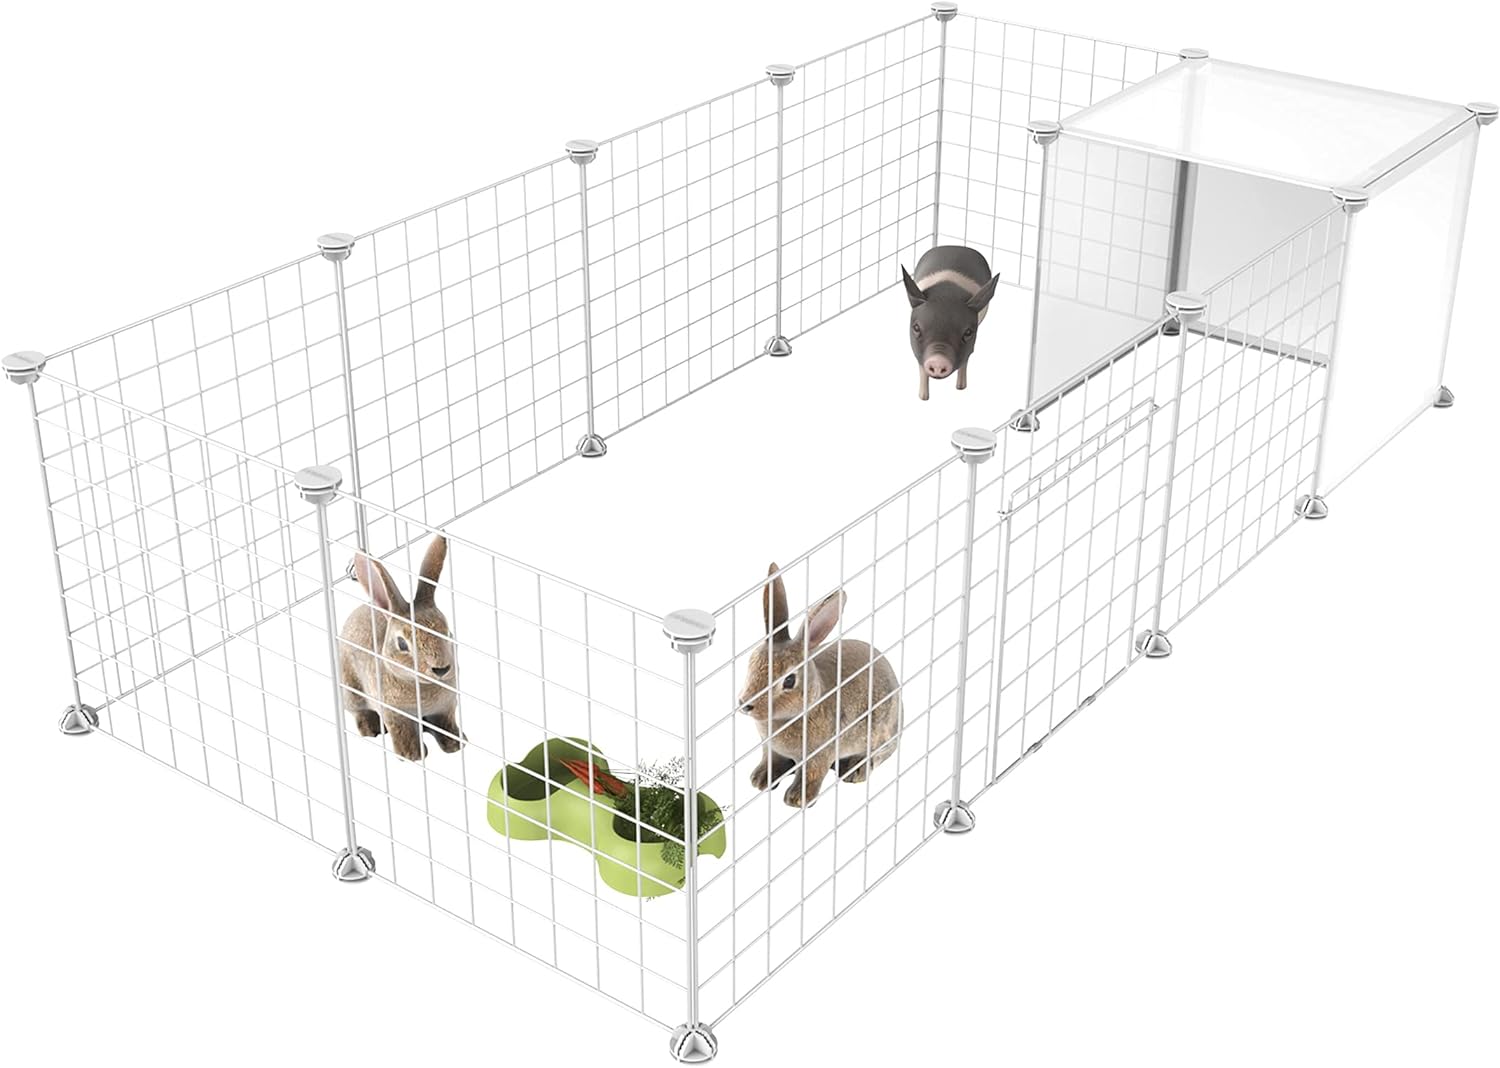 HOMIDEC Pet Playpen,Small Animal Cages with Door,14 Panels Indoor/Outdoor DIY Metal Pet Fence for Puppy,Rabbit,Kitten,Guinea Pig,Turtle,Hedgehog ,White(140x70x35CM)